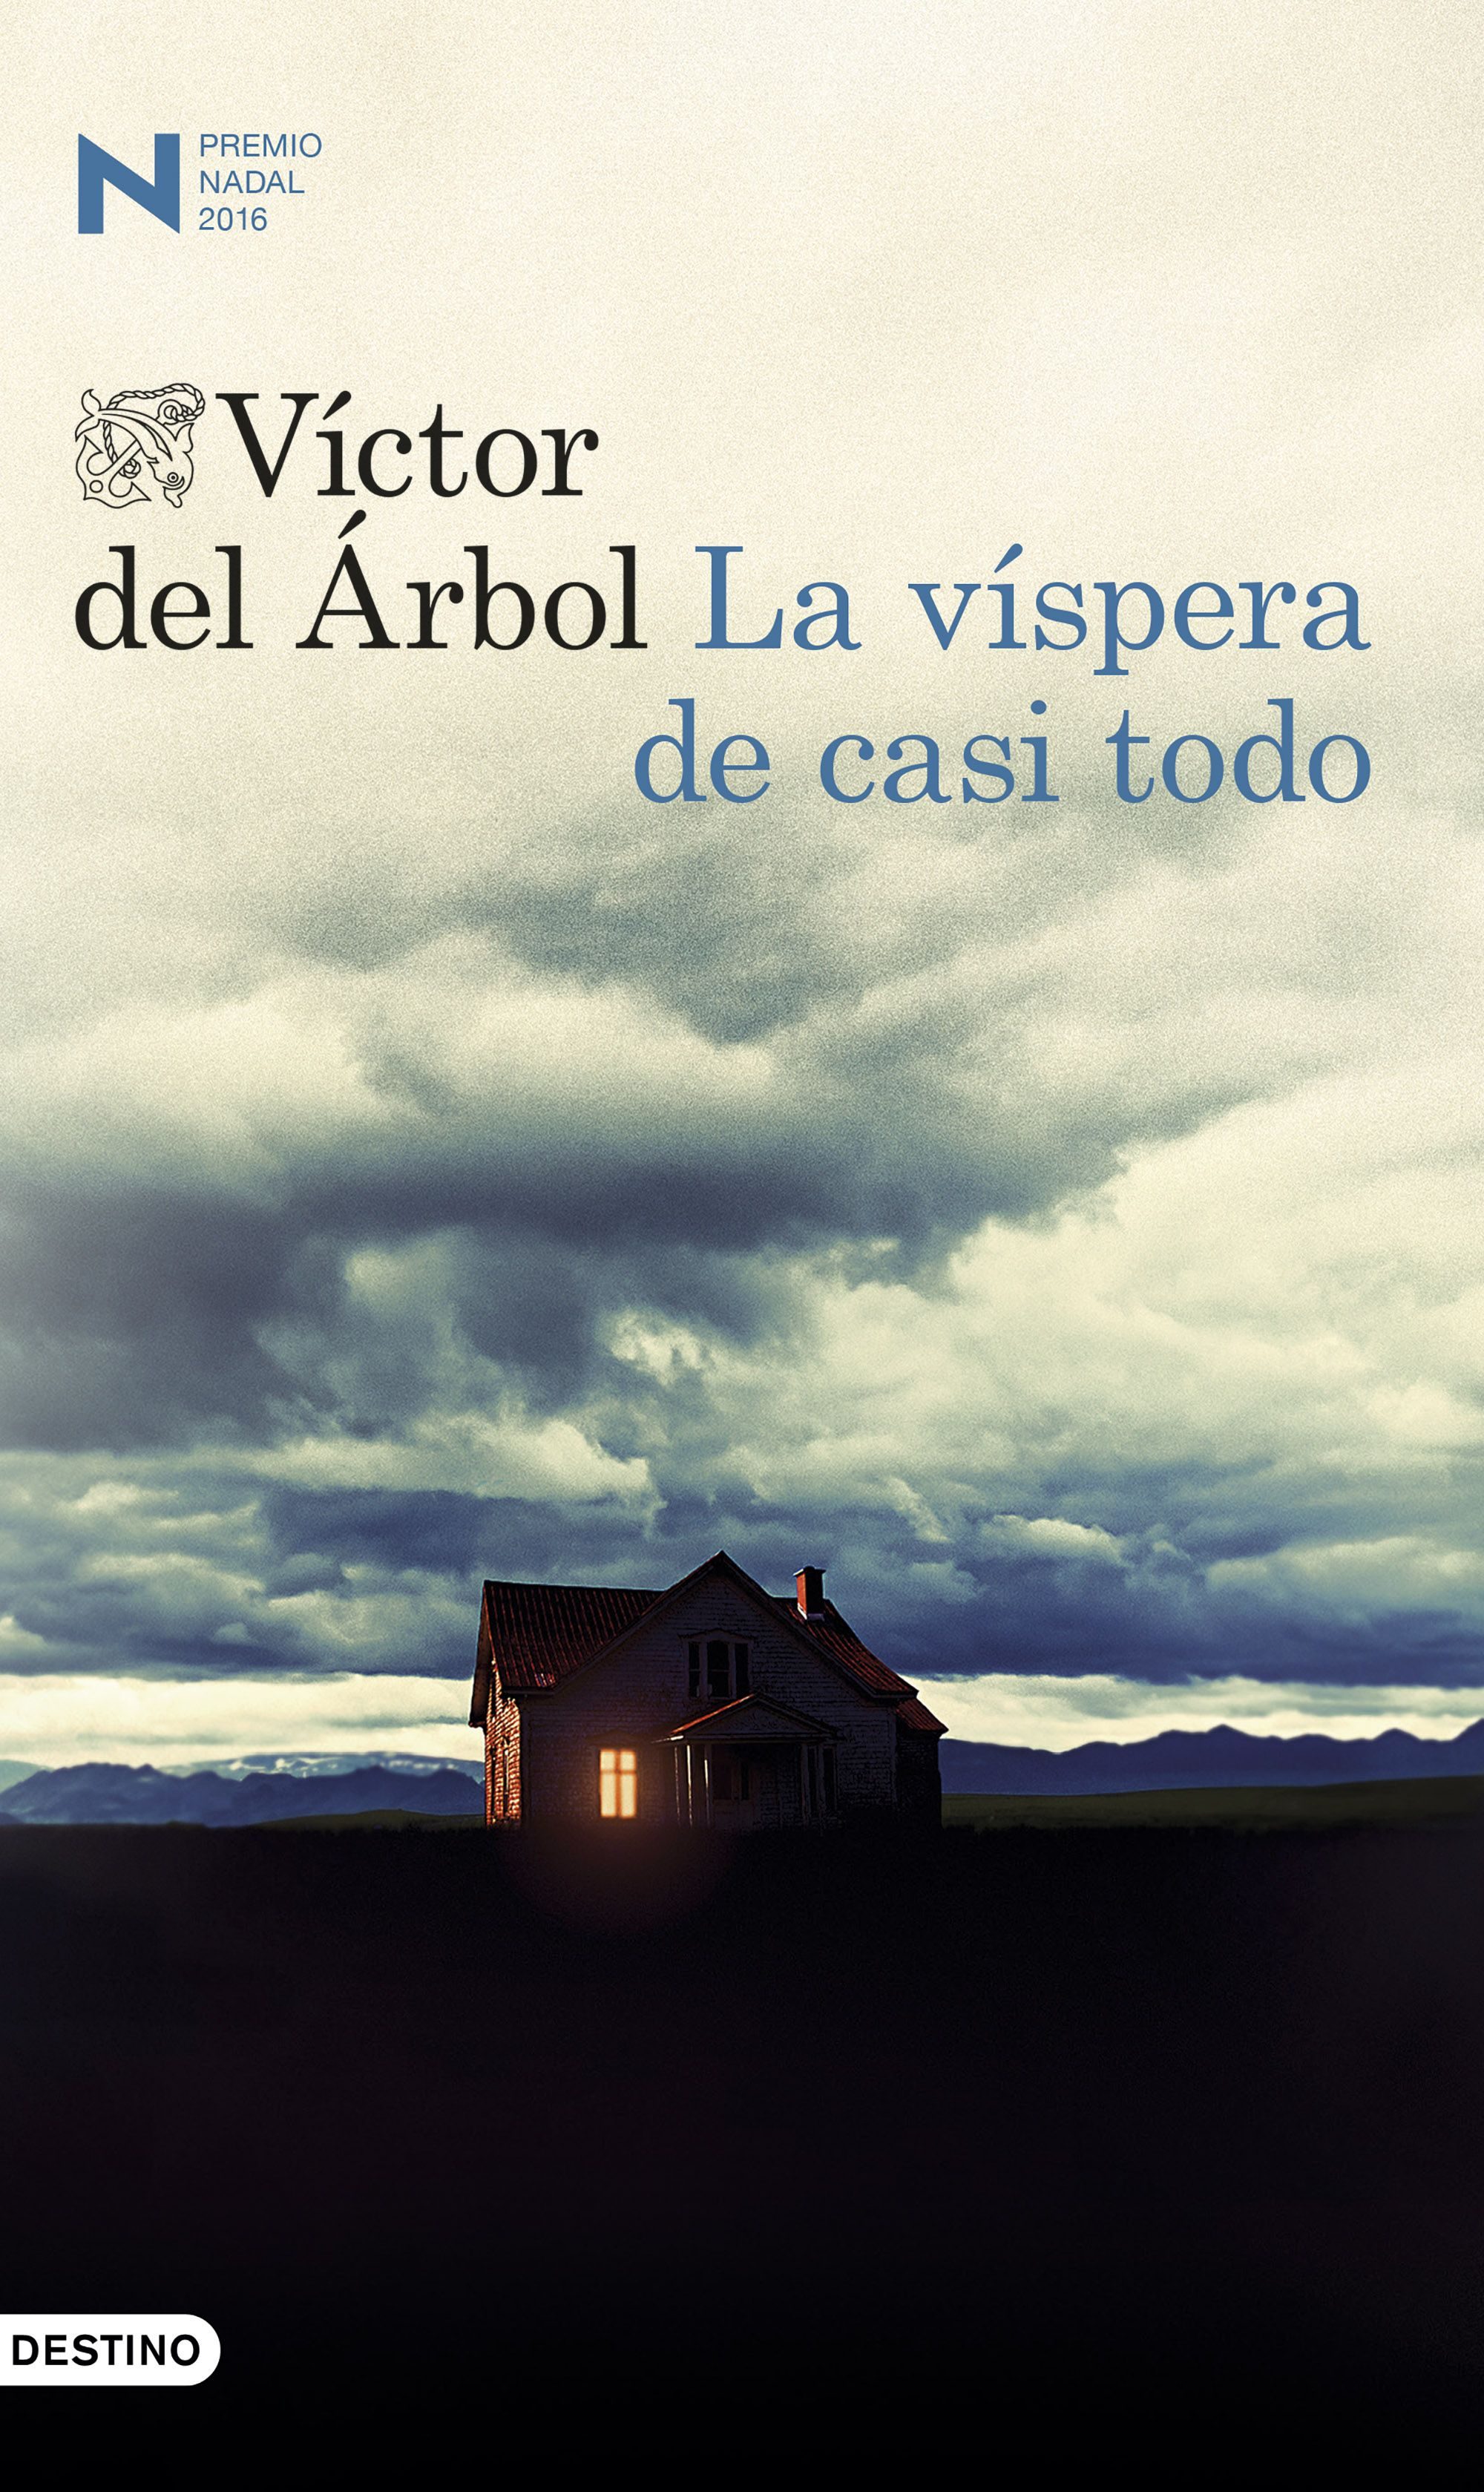 Publisher Destino - La víspera de casi todo - Víctor del Árbol